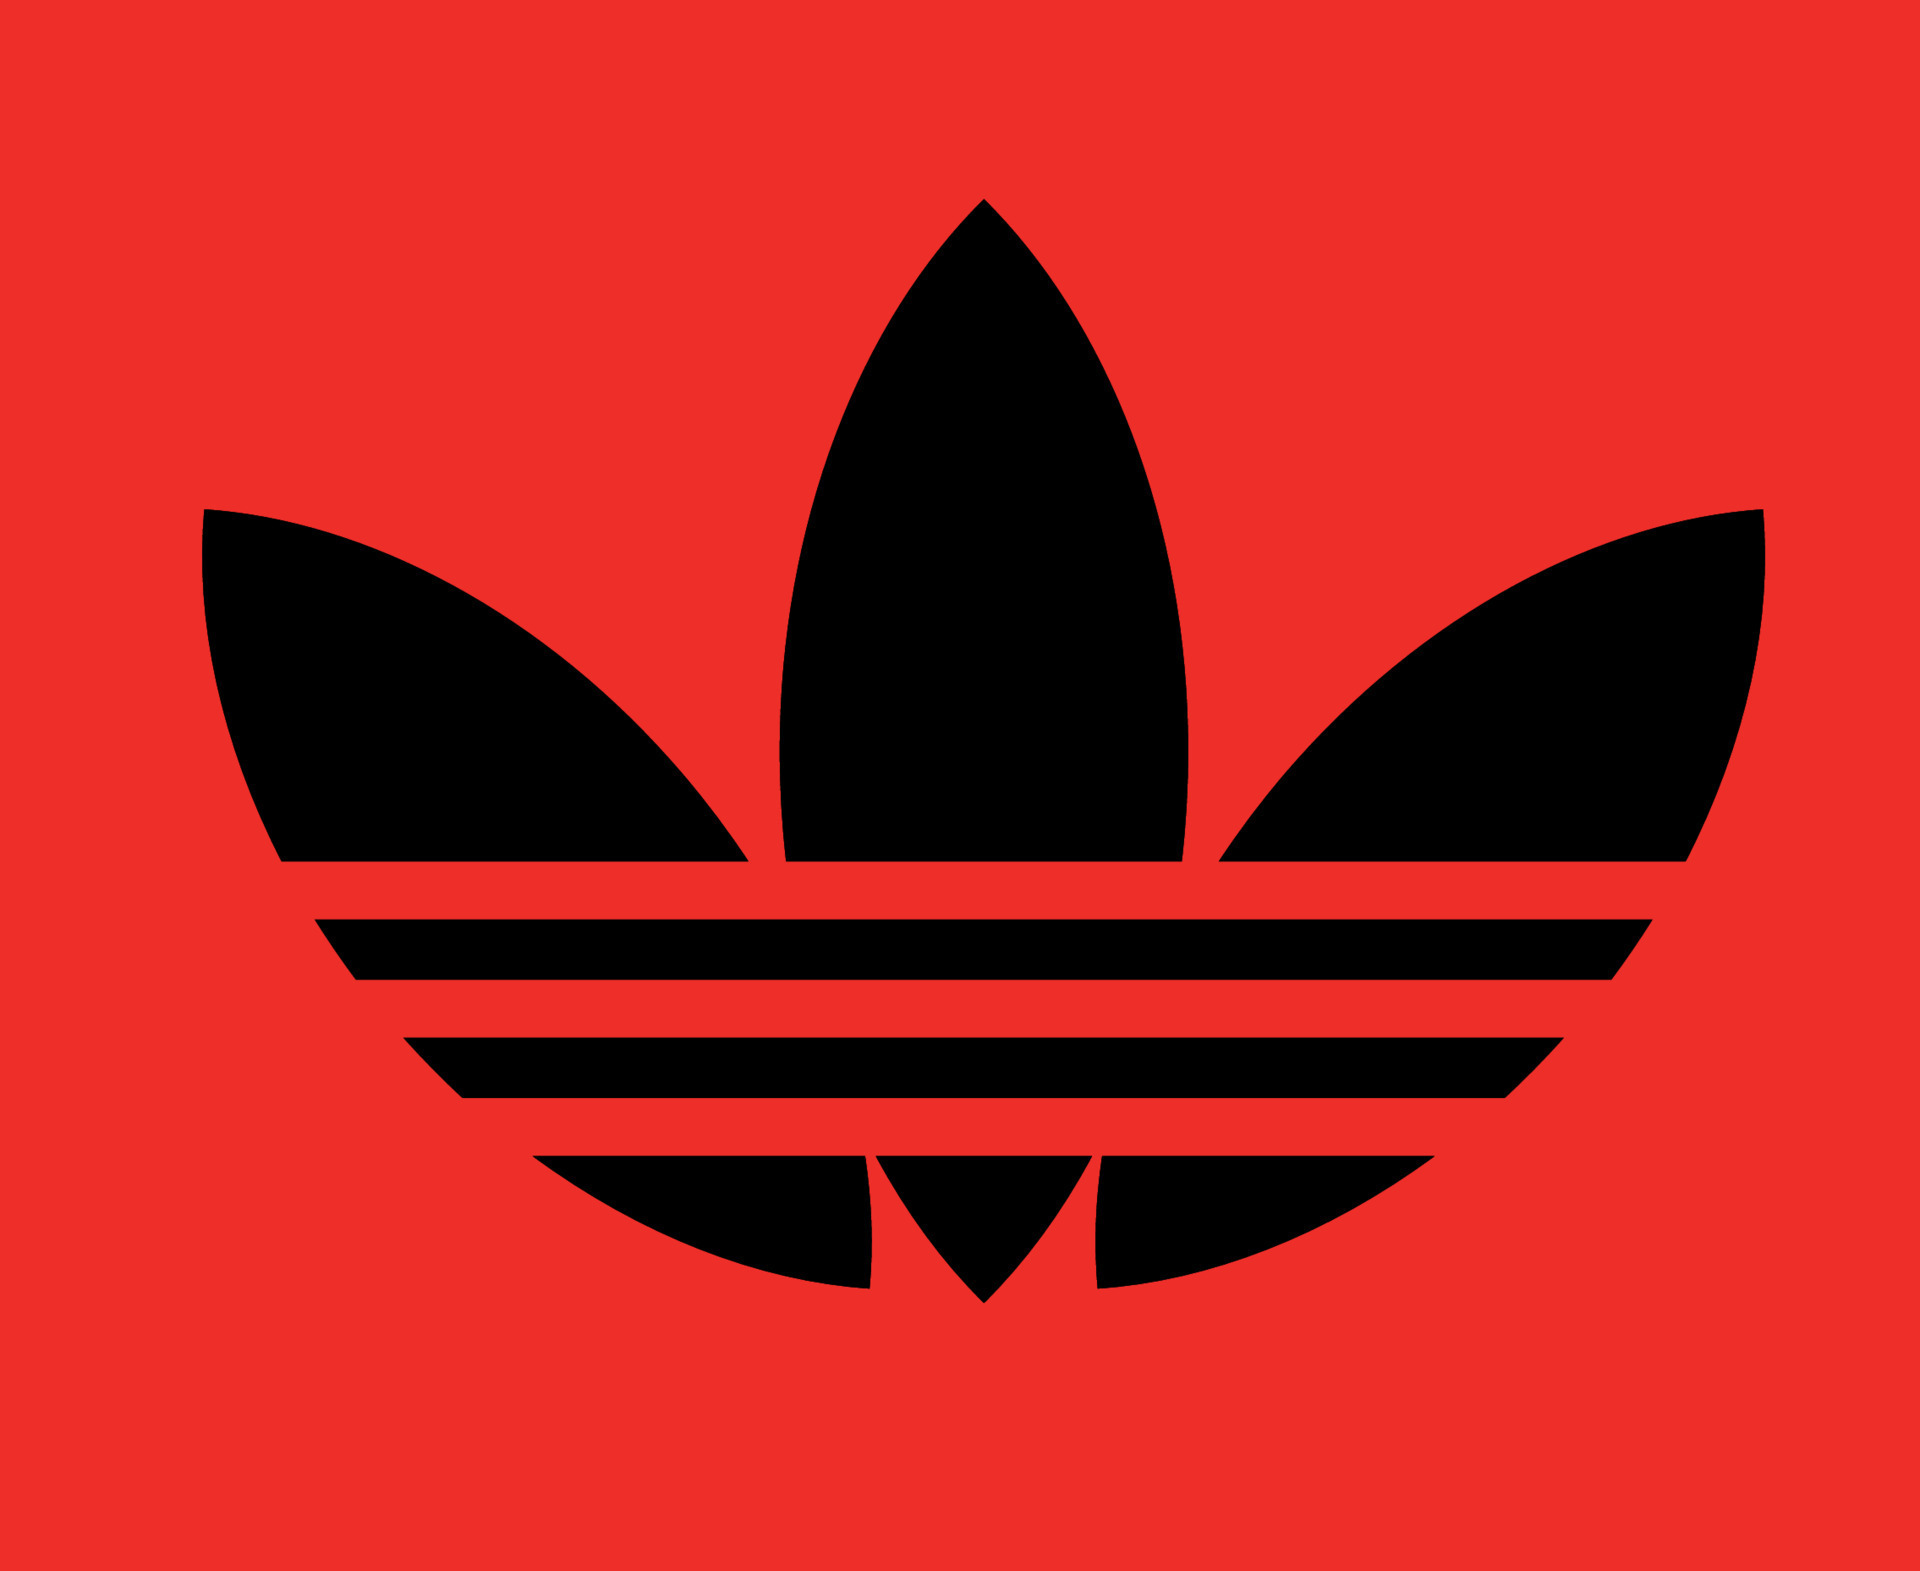 Adidas Symbol Logo Black Clothes Design Icon Abstract football ...